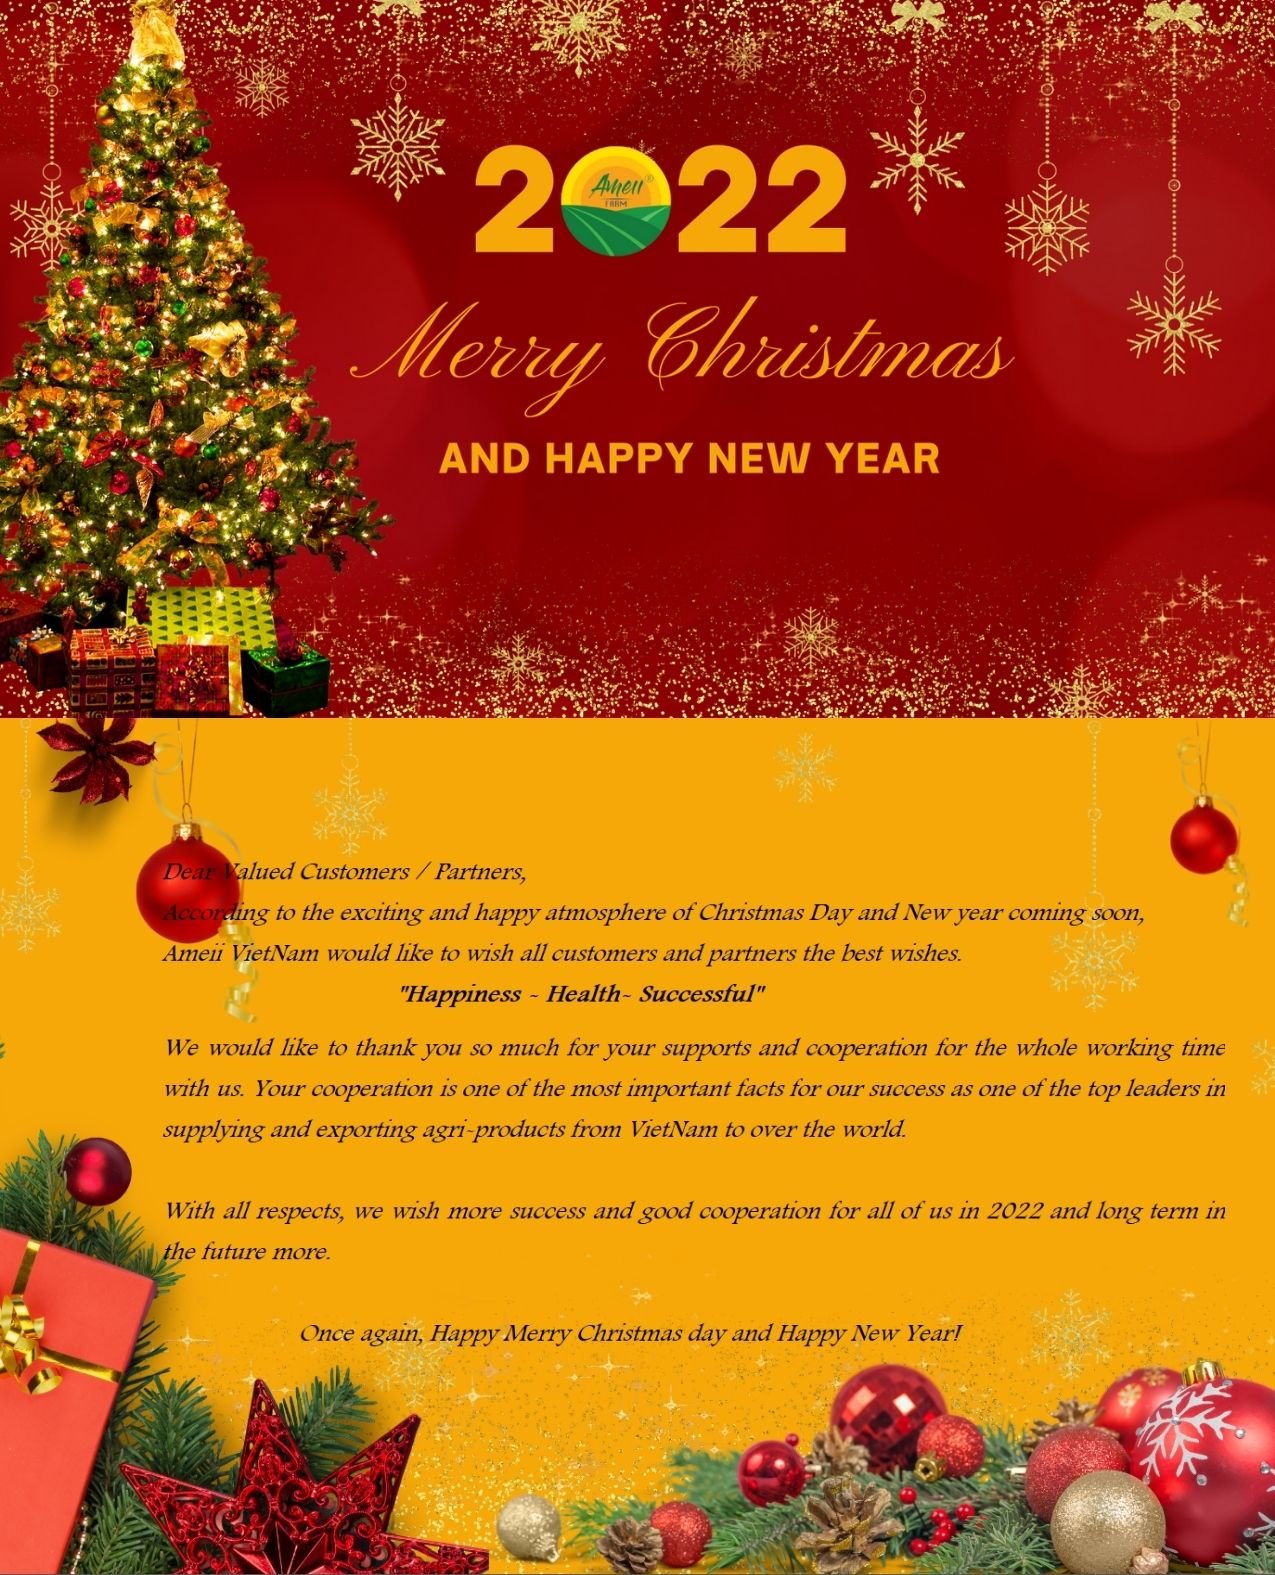 Chúc mừng Giáng Sinh và Năm Mới 2022